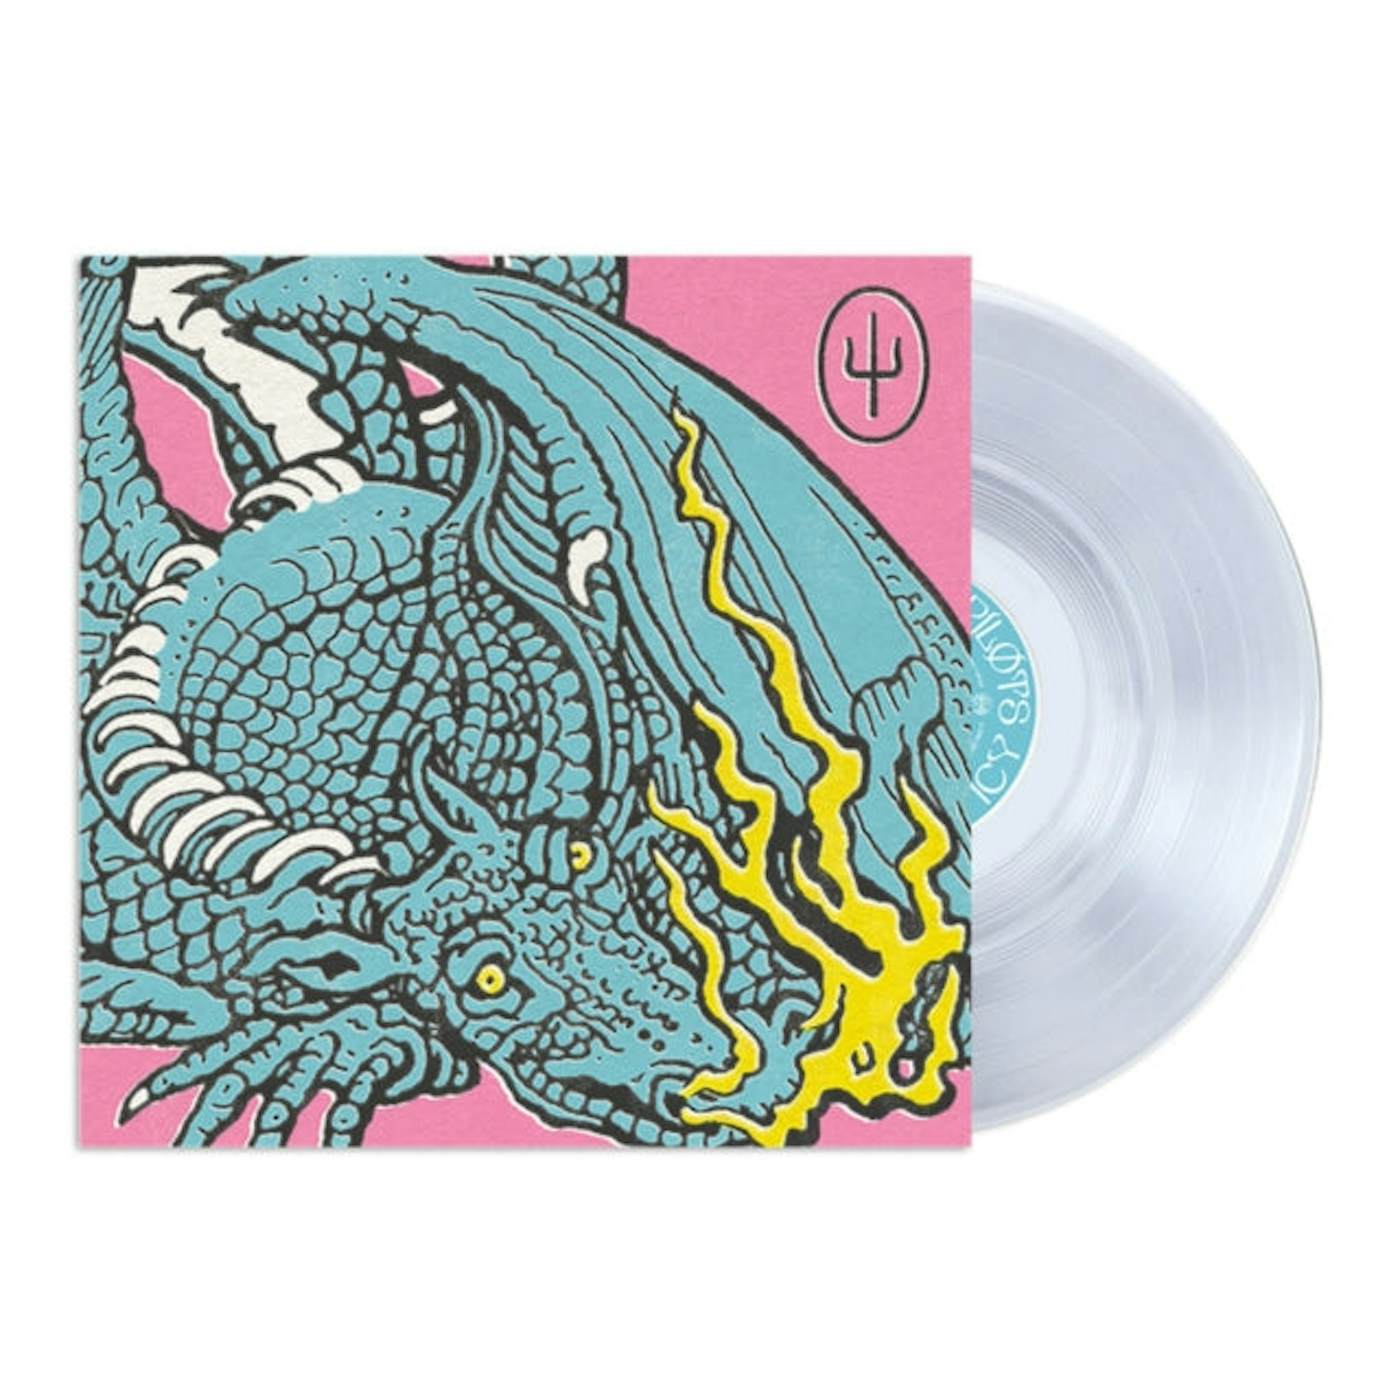 Twenty One Pilots LP Vinyl Record - Scaled And Icy (Coloured Vinyl)